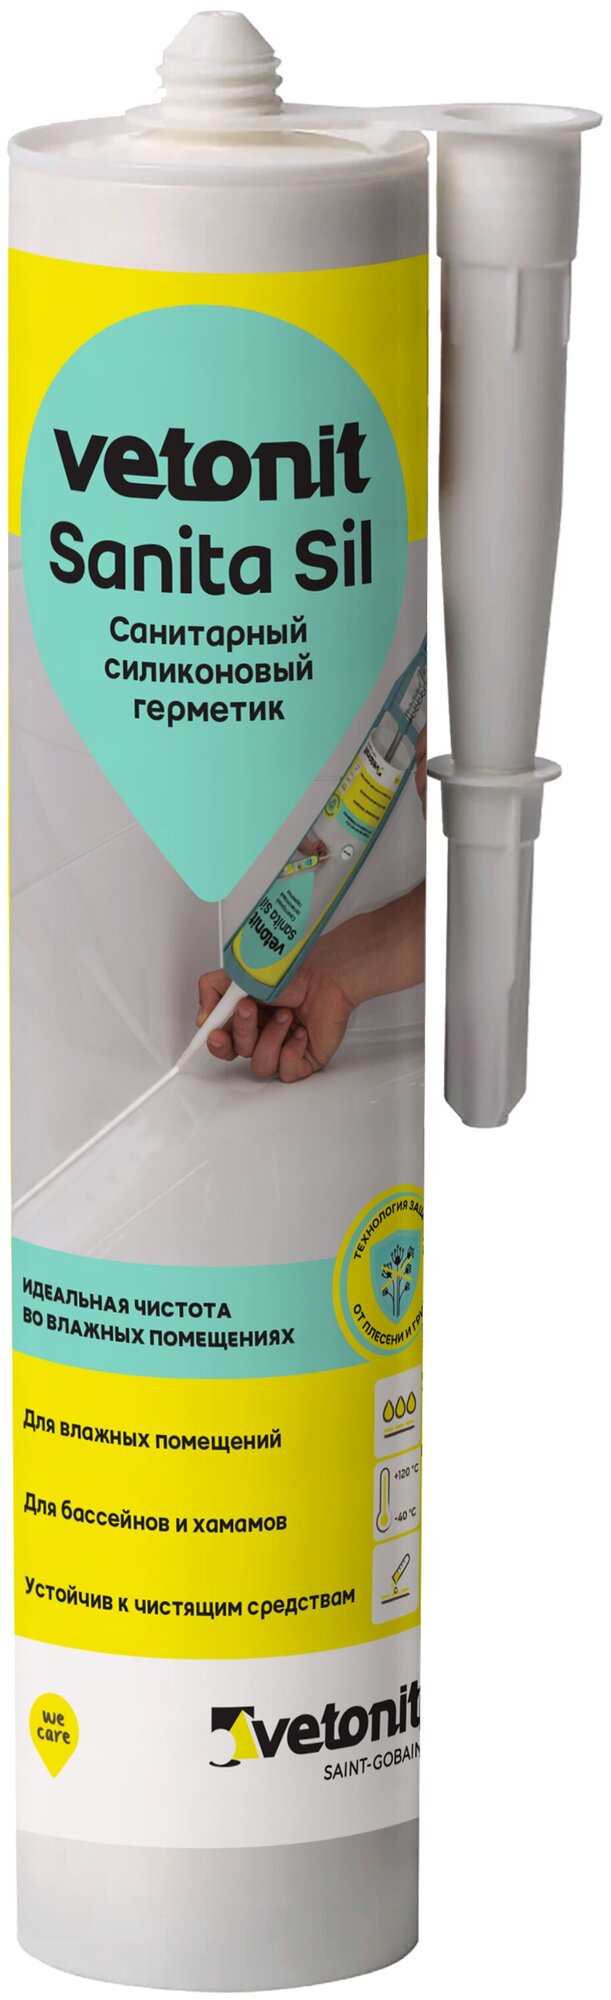 Санитарный силиконовый герметик vetonit sanita sil 280 ml